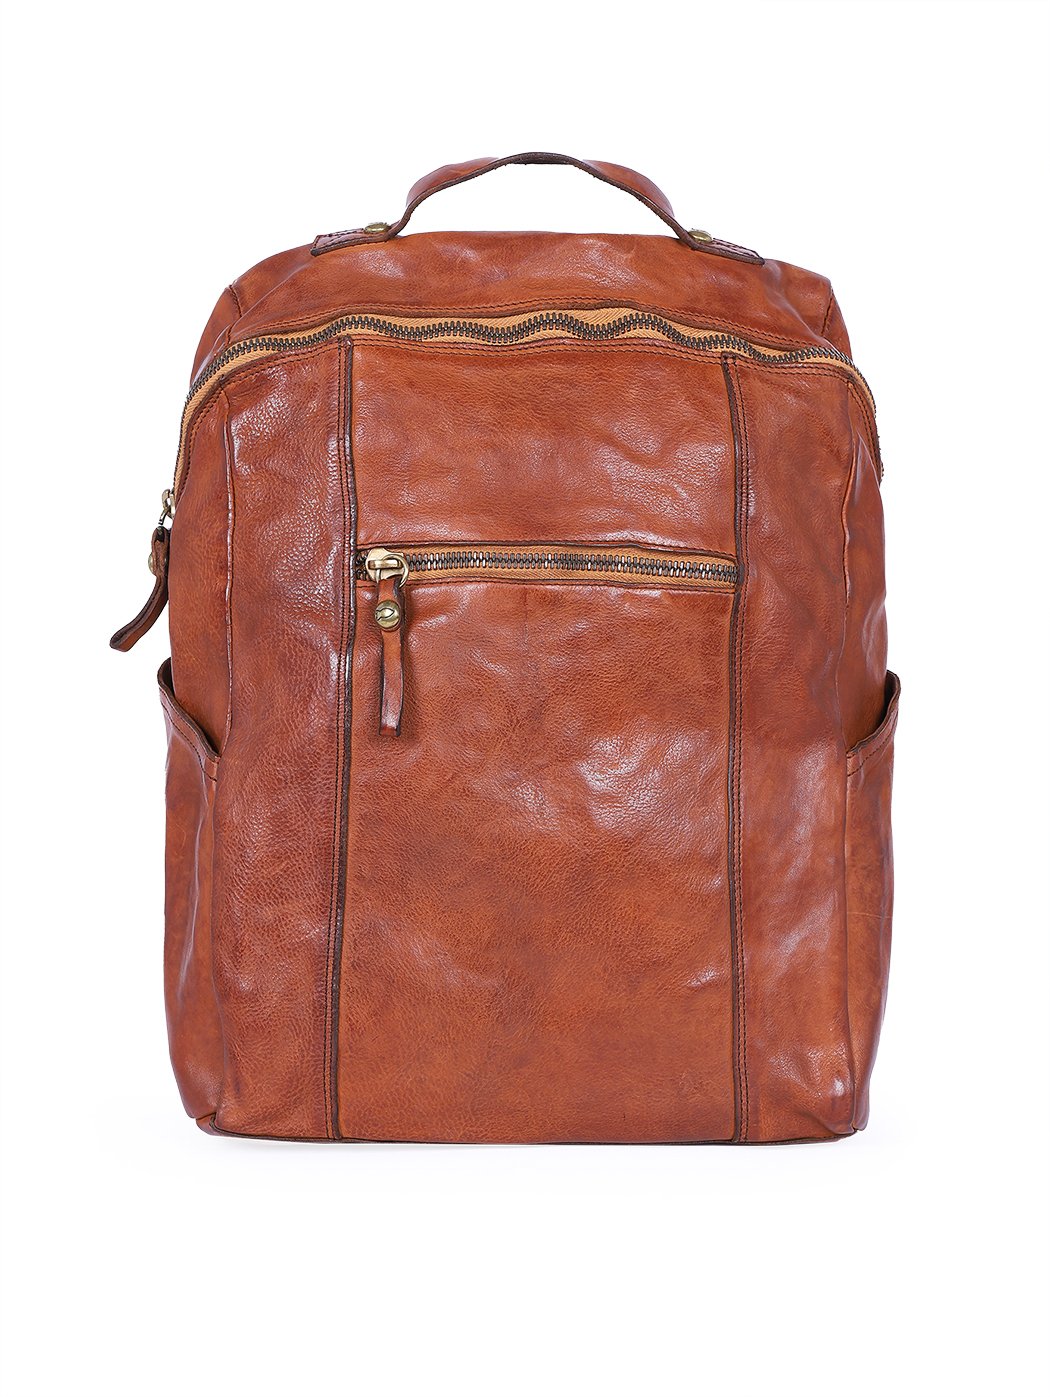 Прямоугольный рюкзак на молнии коричневого цвета